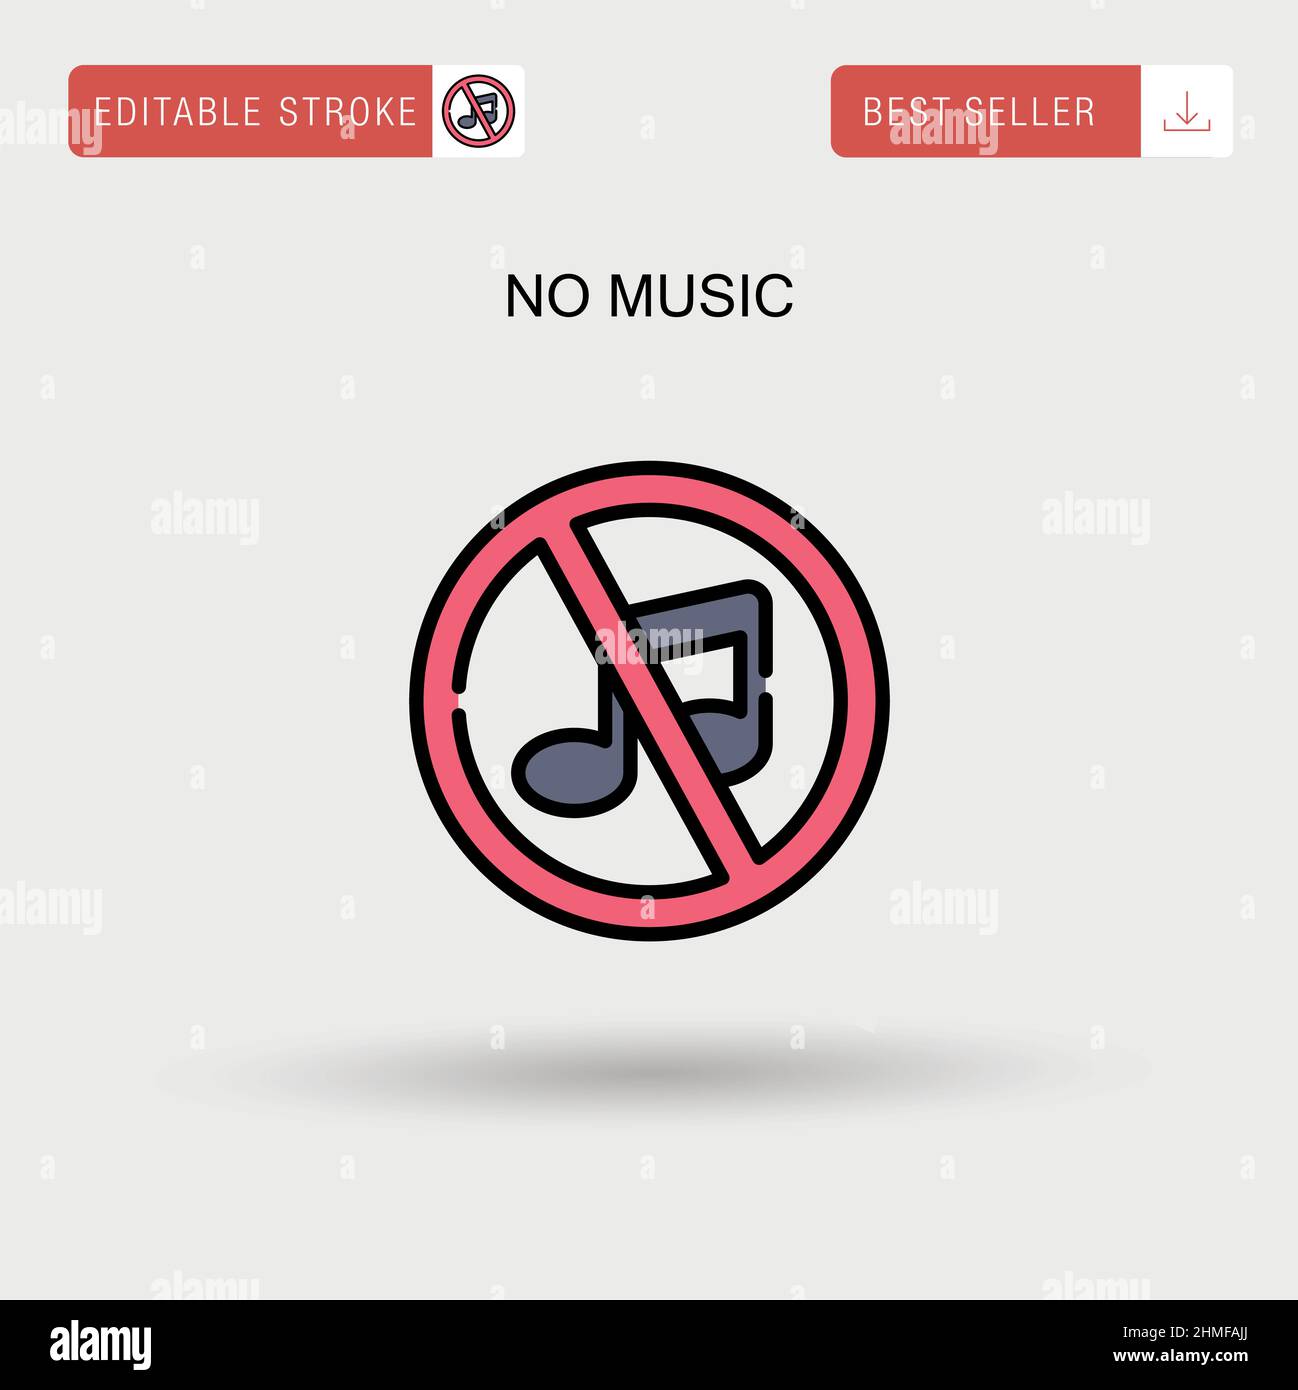 Ein schild mit der aufschrift, dass musik verboten ist, mit einer hupe und  einer note.